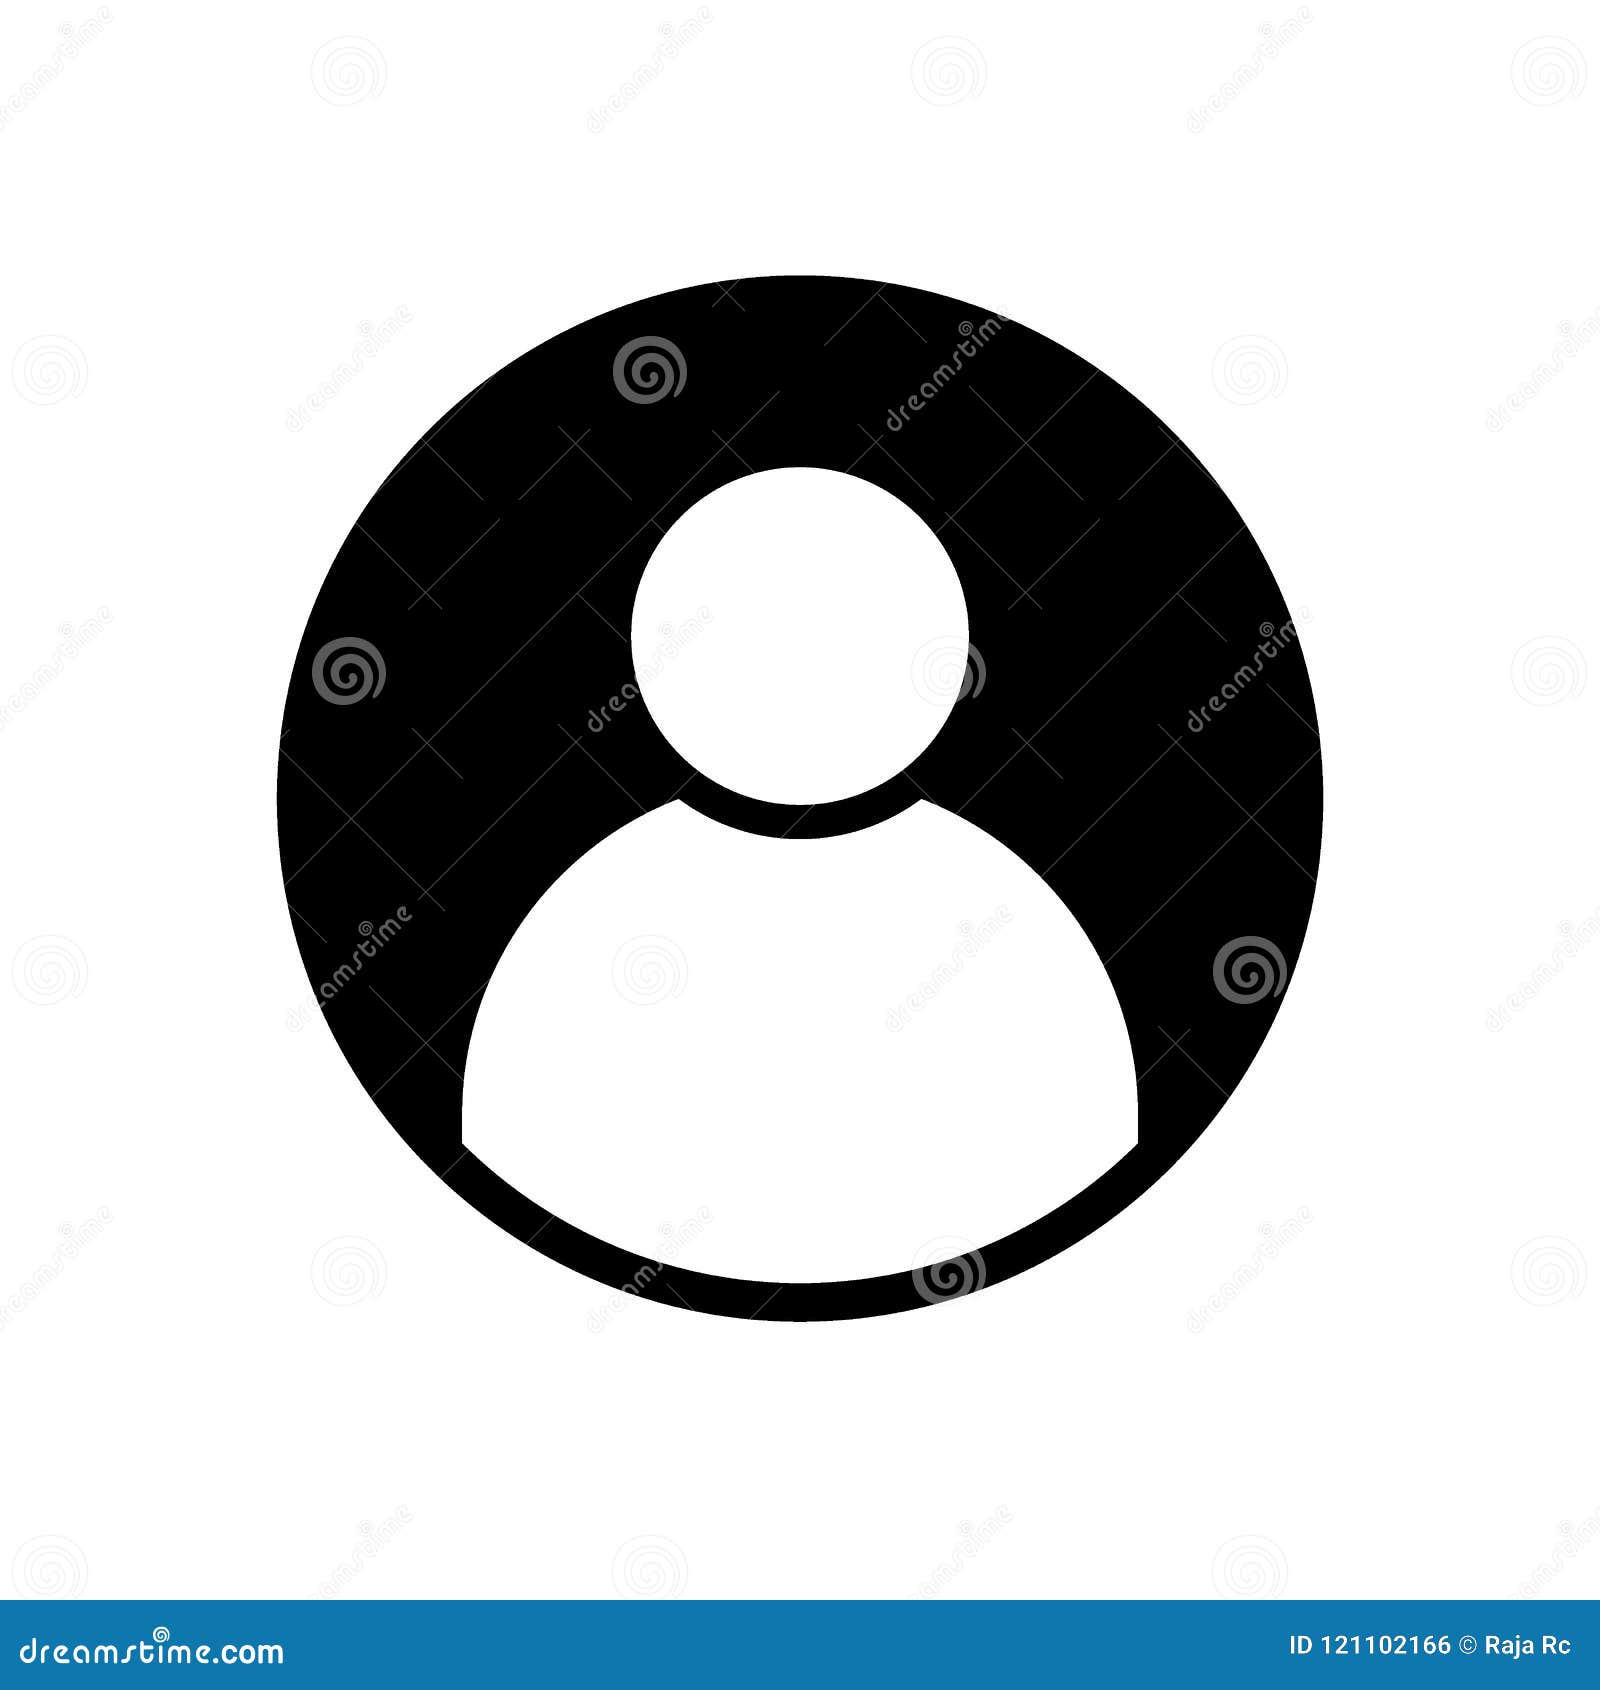 user profile avatar black solid icon